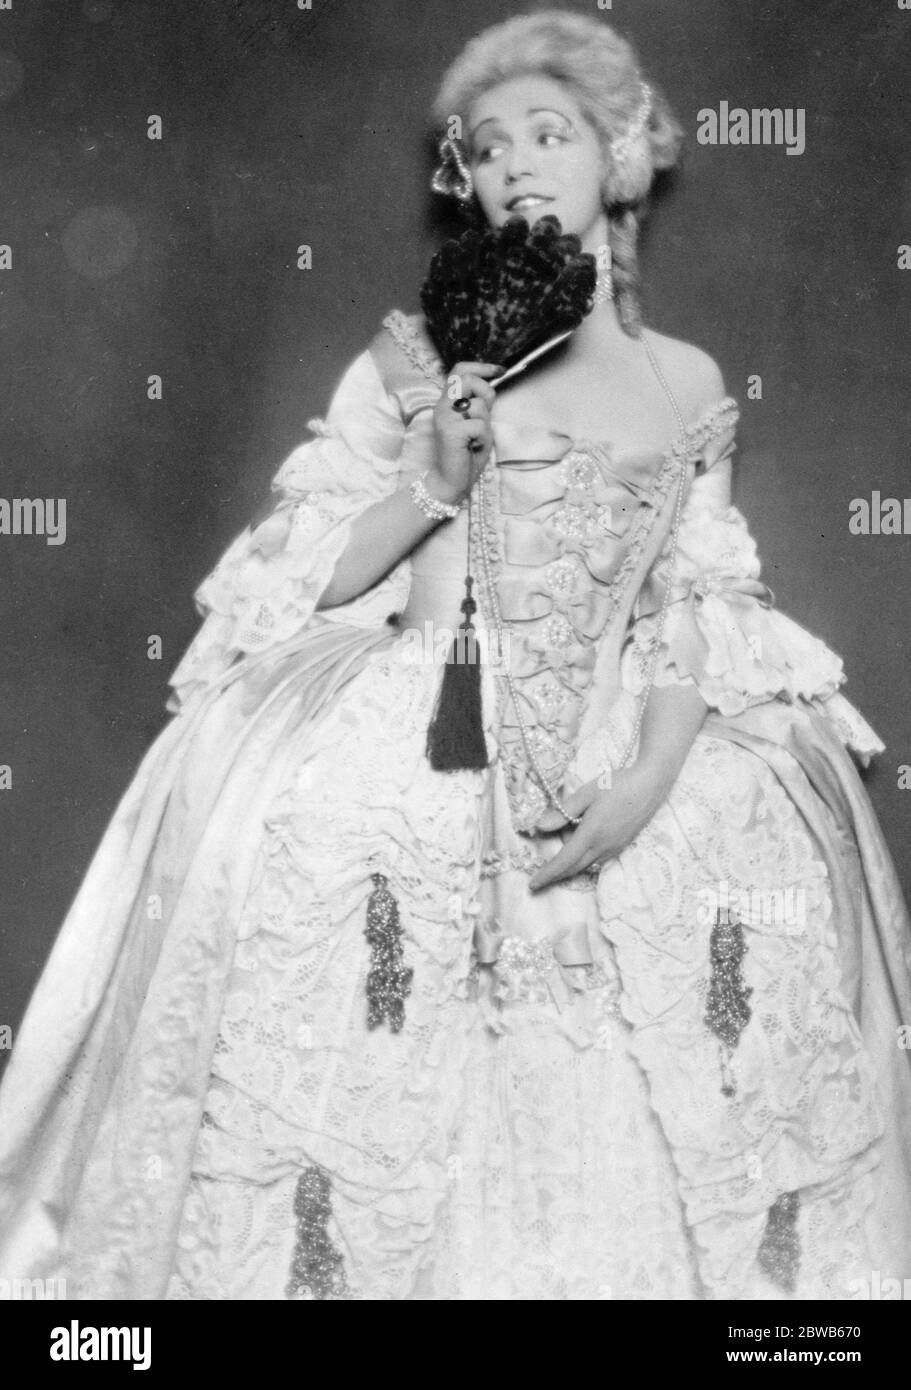 Héroïne de Berlin jouer avec le cadre anglais . Mlle Maria Fein , actrice autrichienne bien connue dans son rôle de Lady Milford dans la pièce de ce nom qui est maintenant produit à Berlin . 18 août 1924 Banque D'Images